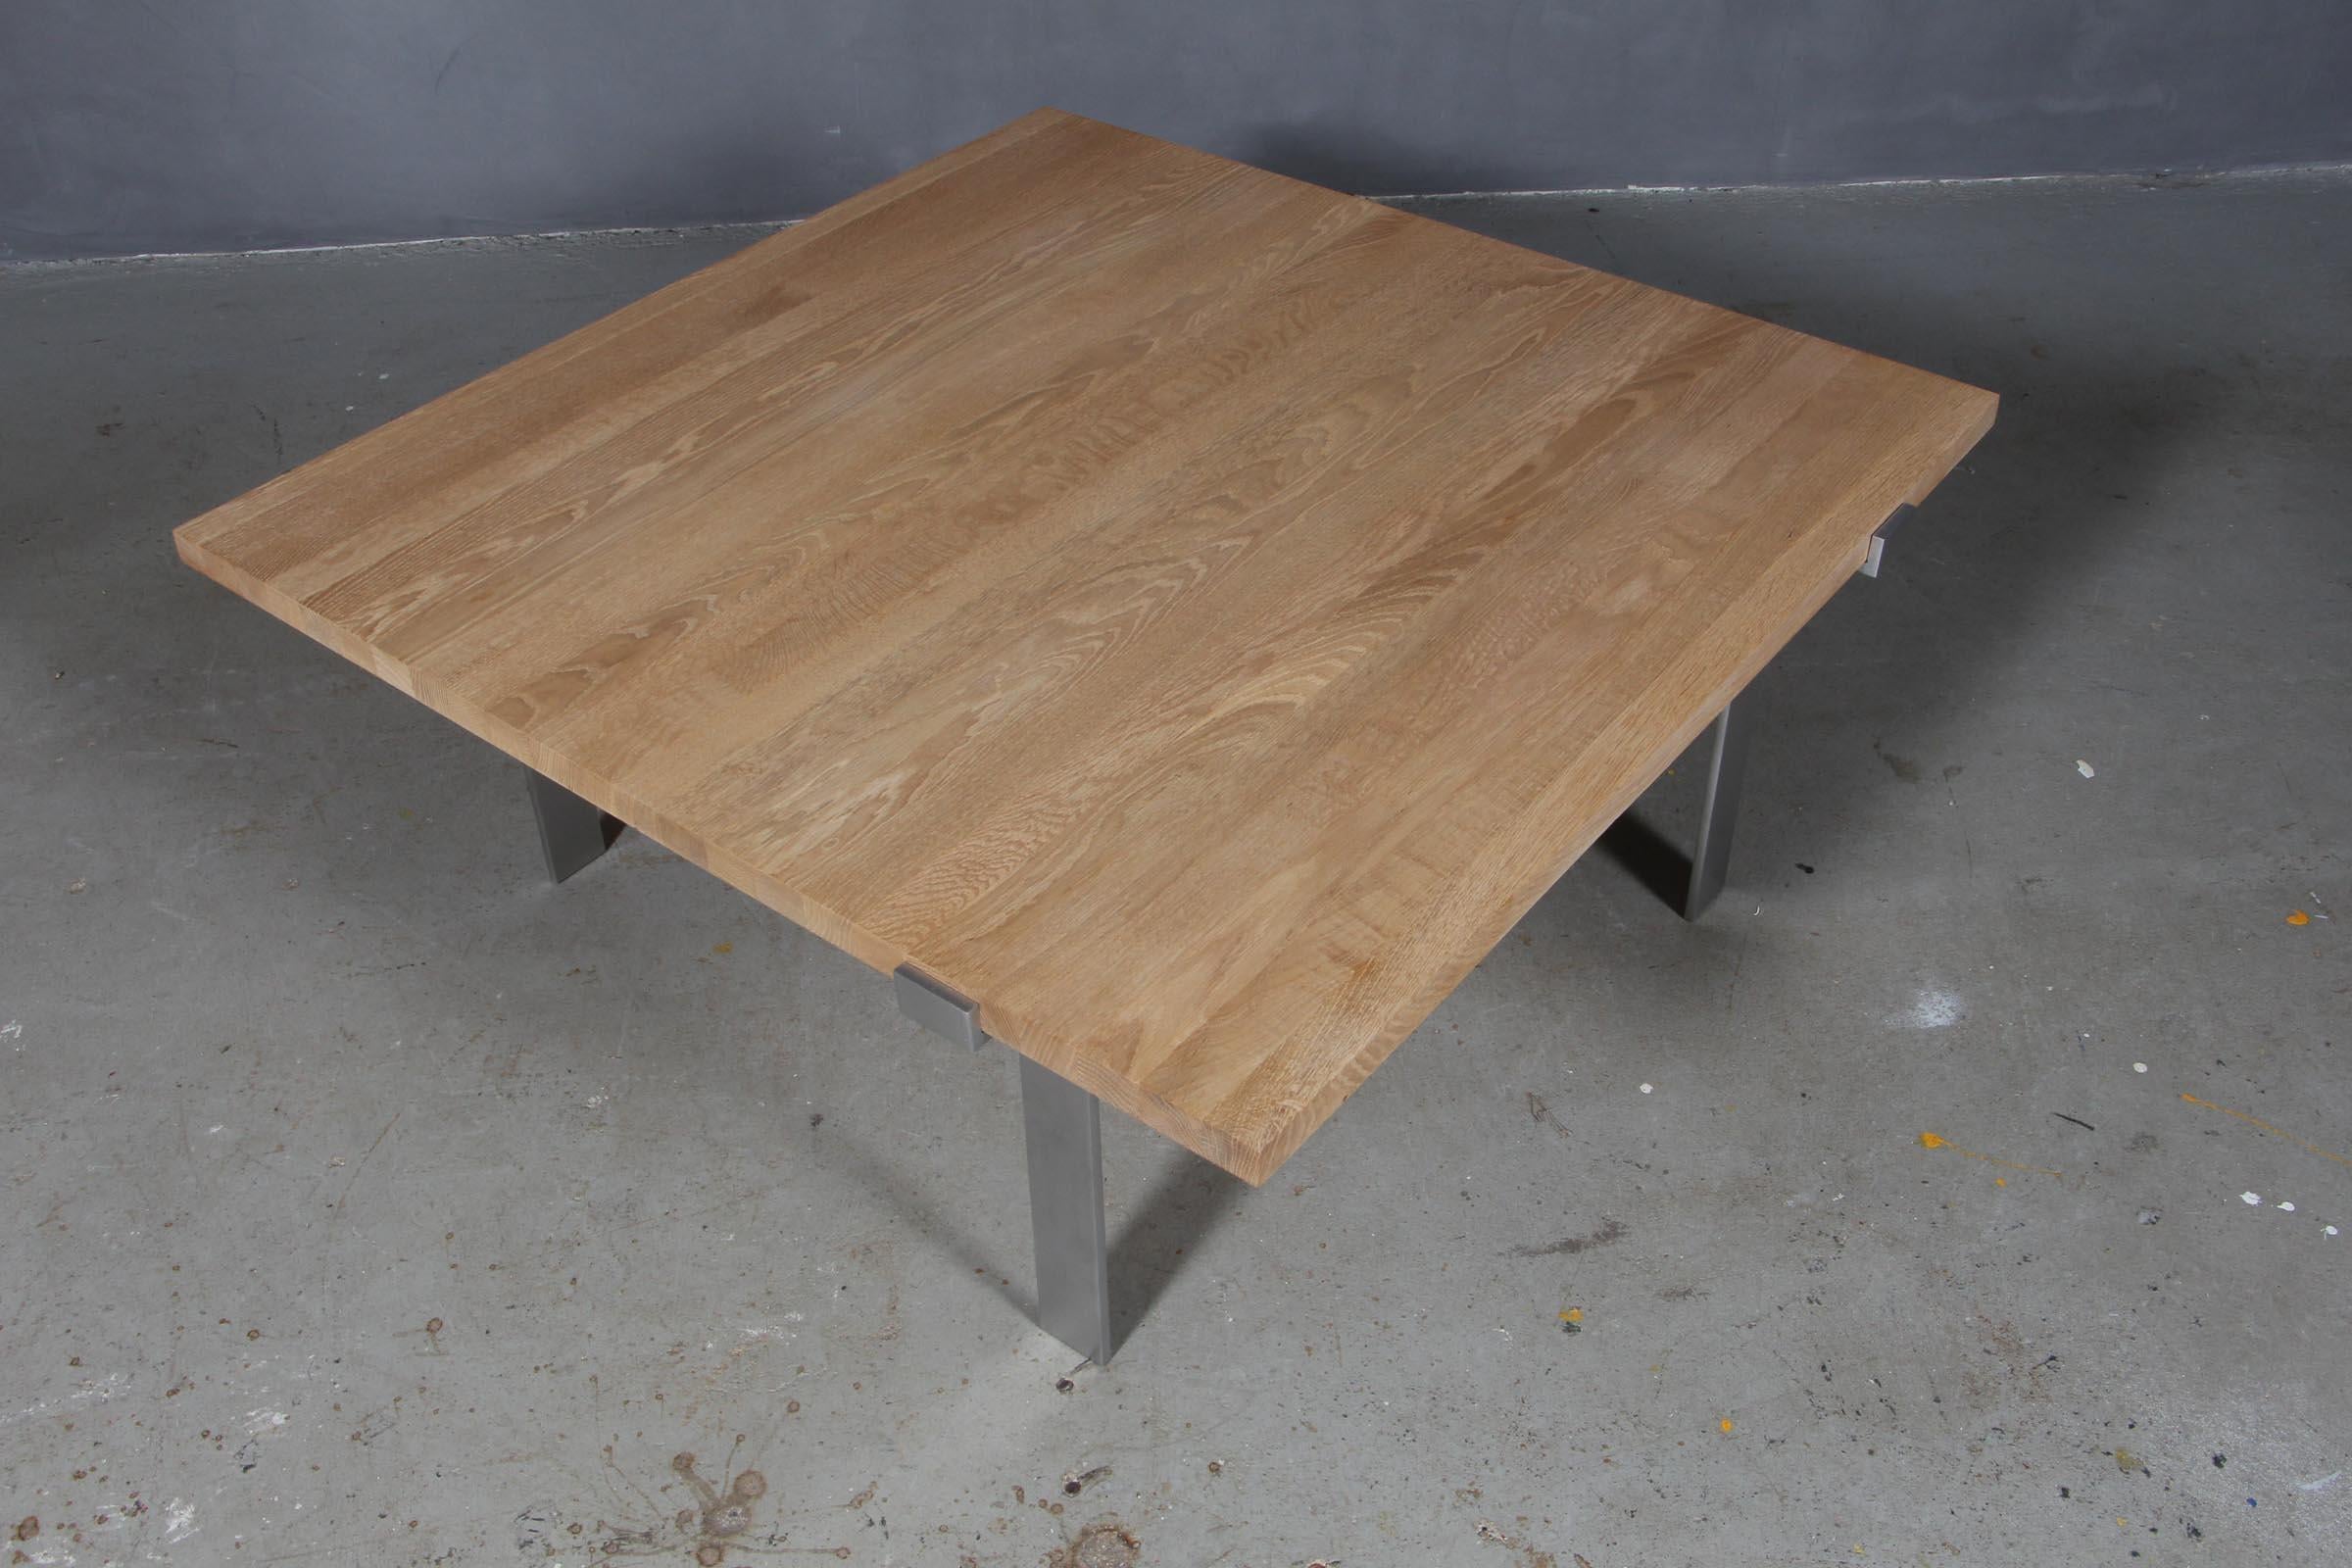 Jørgen Høj coffee table with plate of solid oak.

Frame of steel. 

Made by Niels Vitsøe.

Jørgen Høj was working together with Poul Kjærholm.